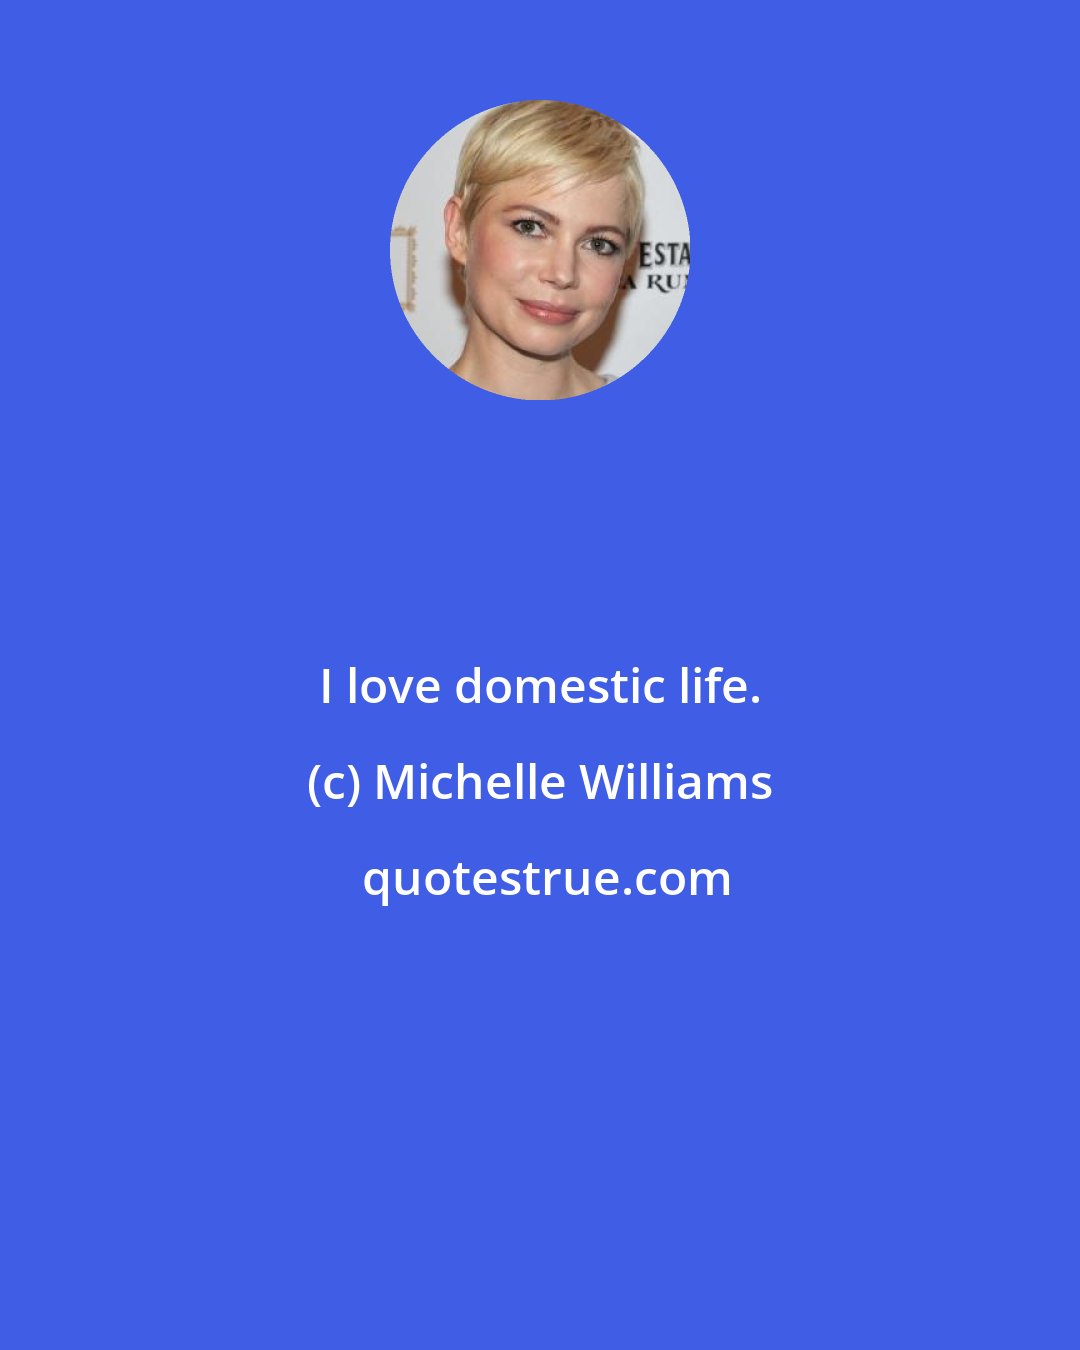 Michelle Williams: I love domestic life.